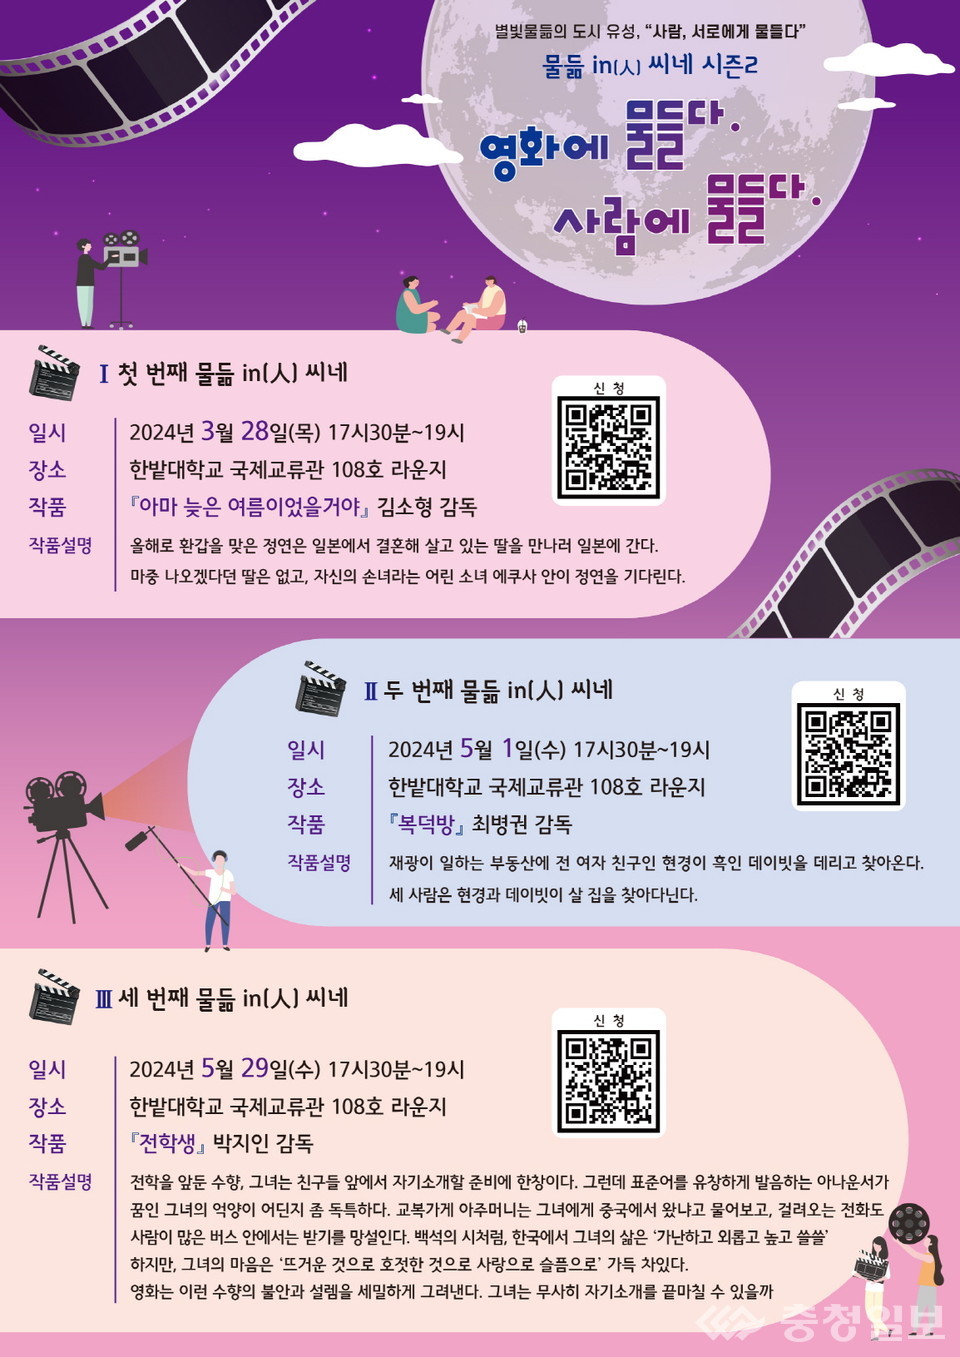 ▲ 국립한밭대학교 인문도시지원사업 ‘물듦in(人) 씨네’ 시즌2 안내 포스터